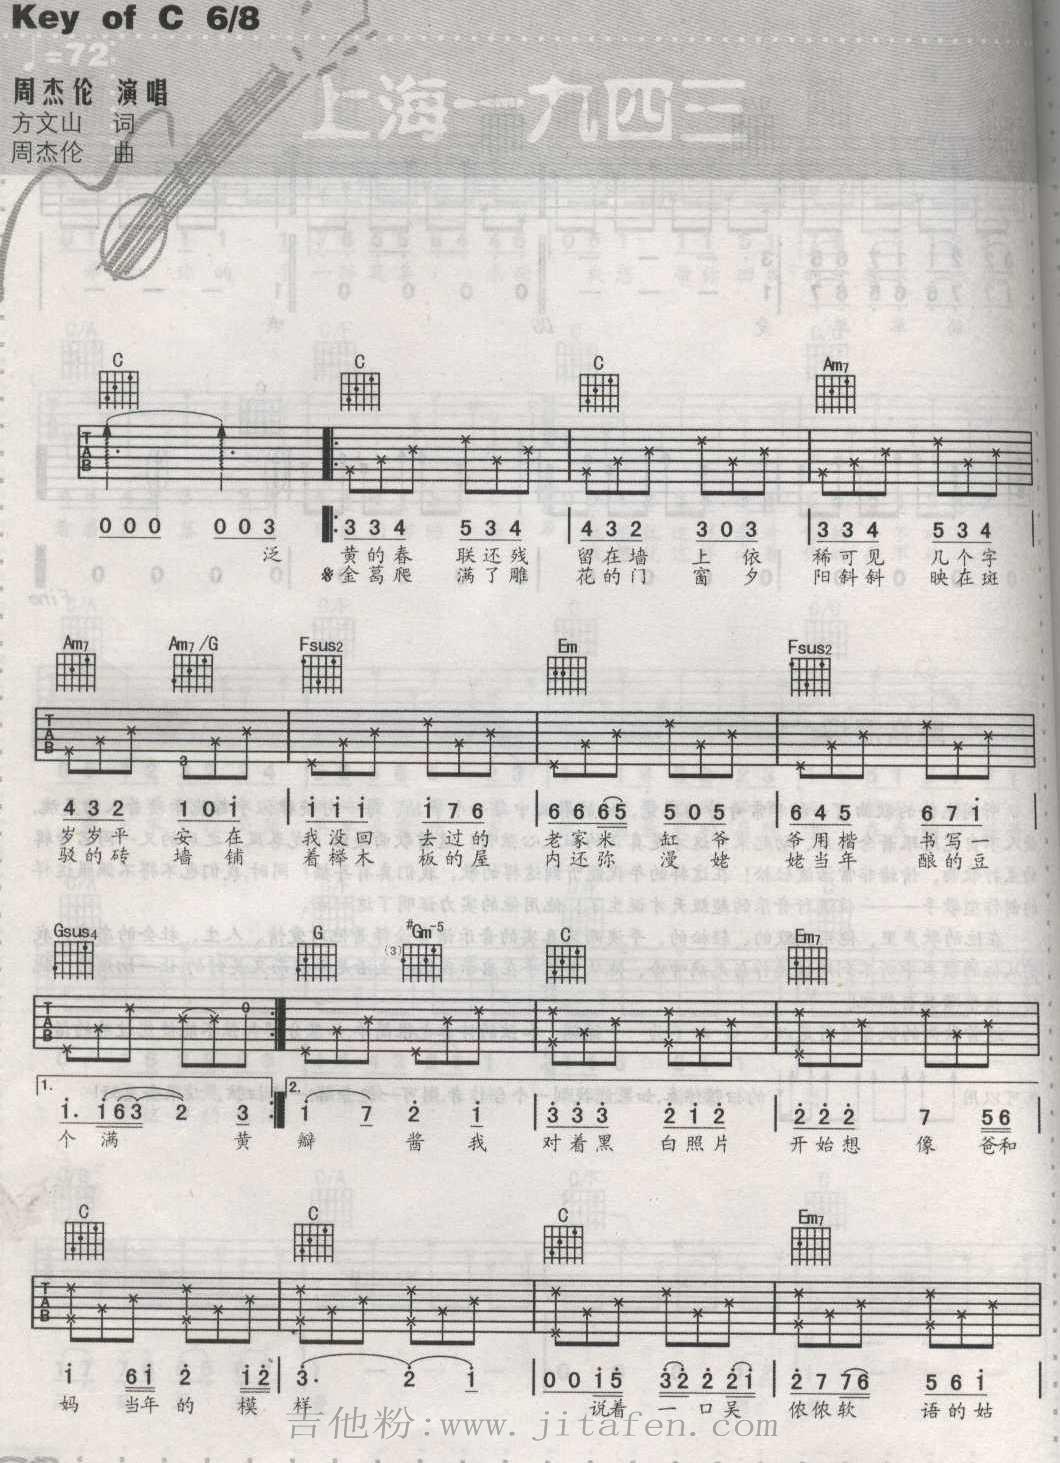 上海1943 吉他谱